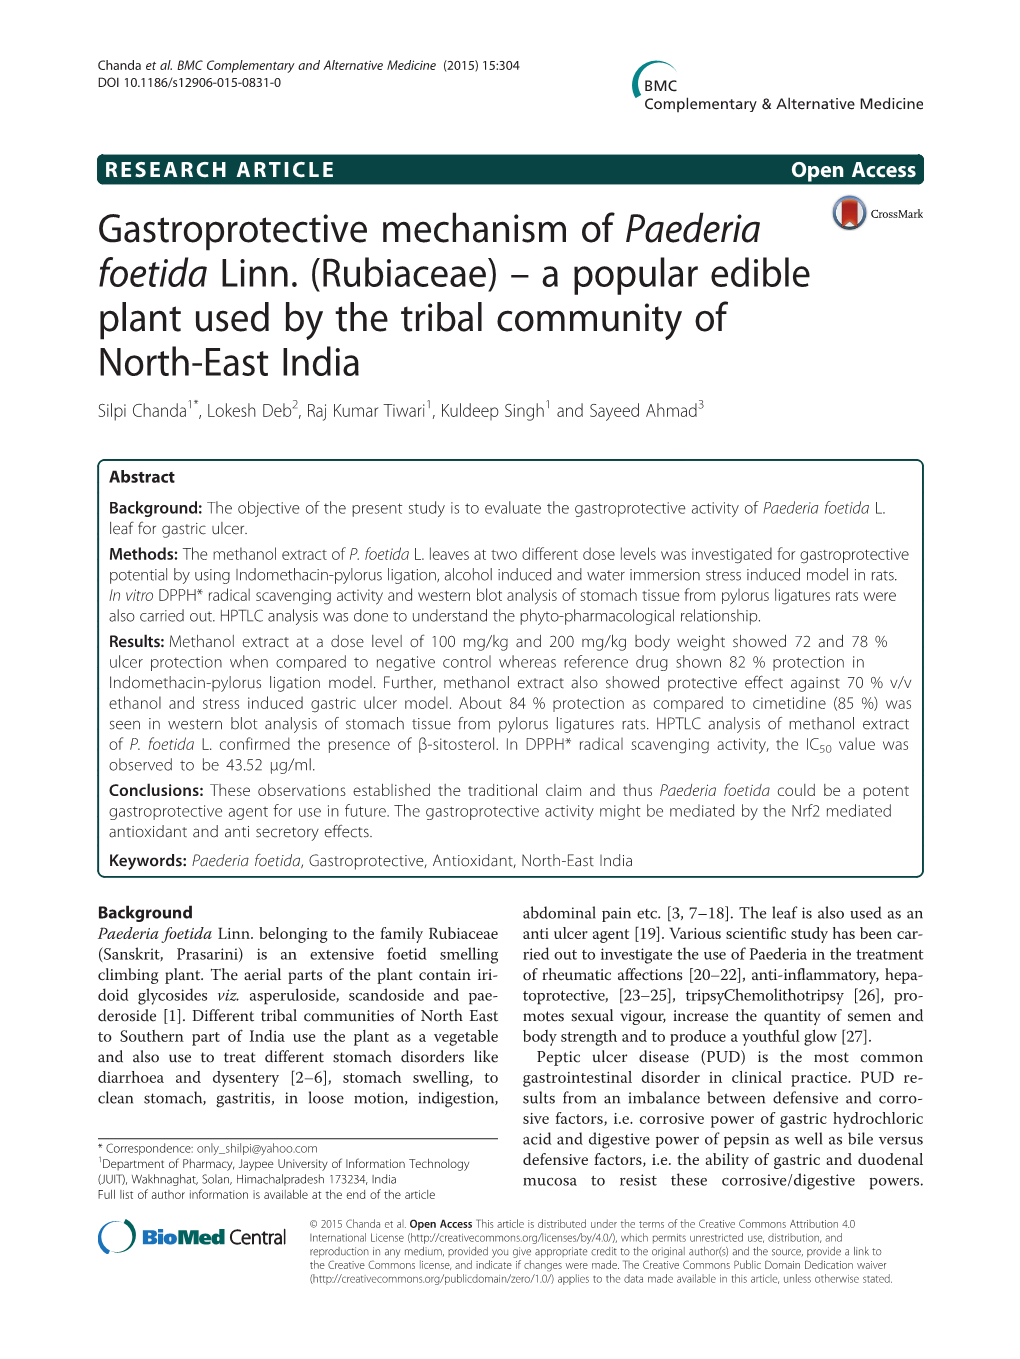 Gastroprotective Mechanism of Paederia Foetida Linn. (Rubiaceae